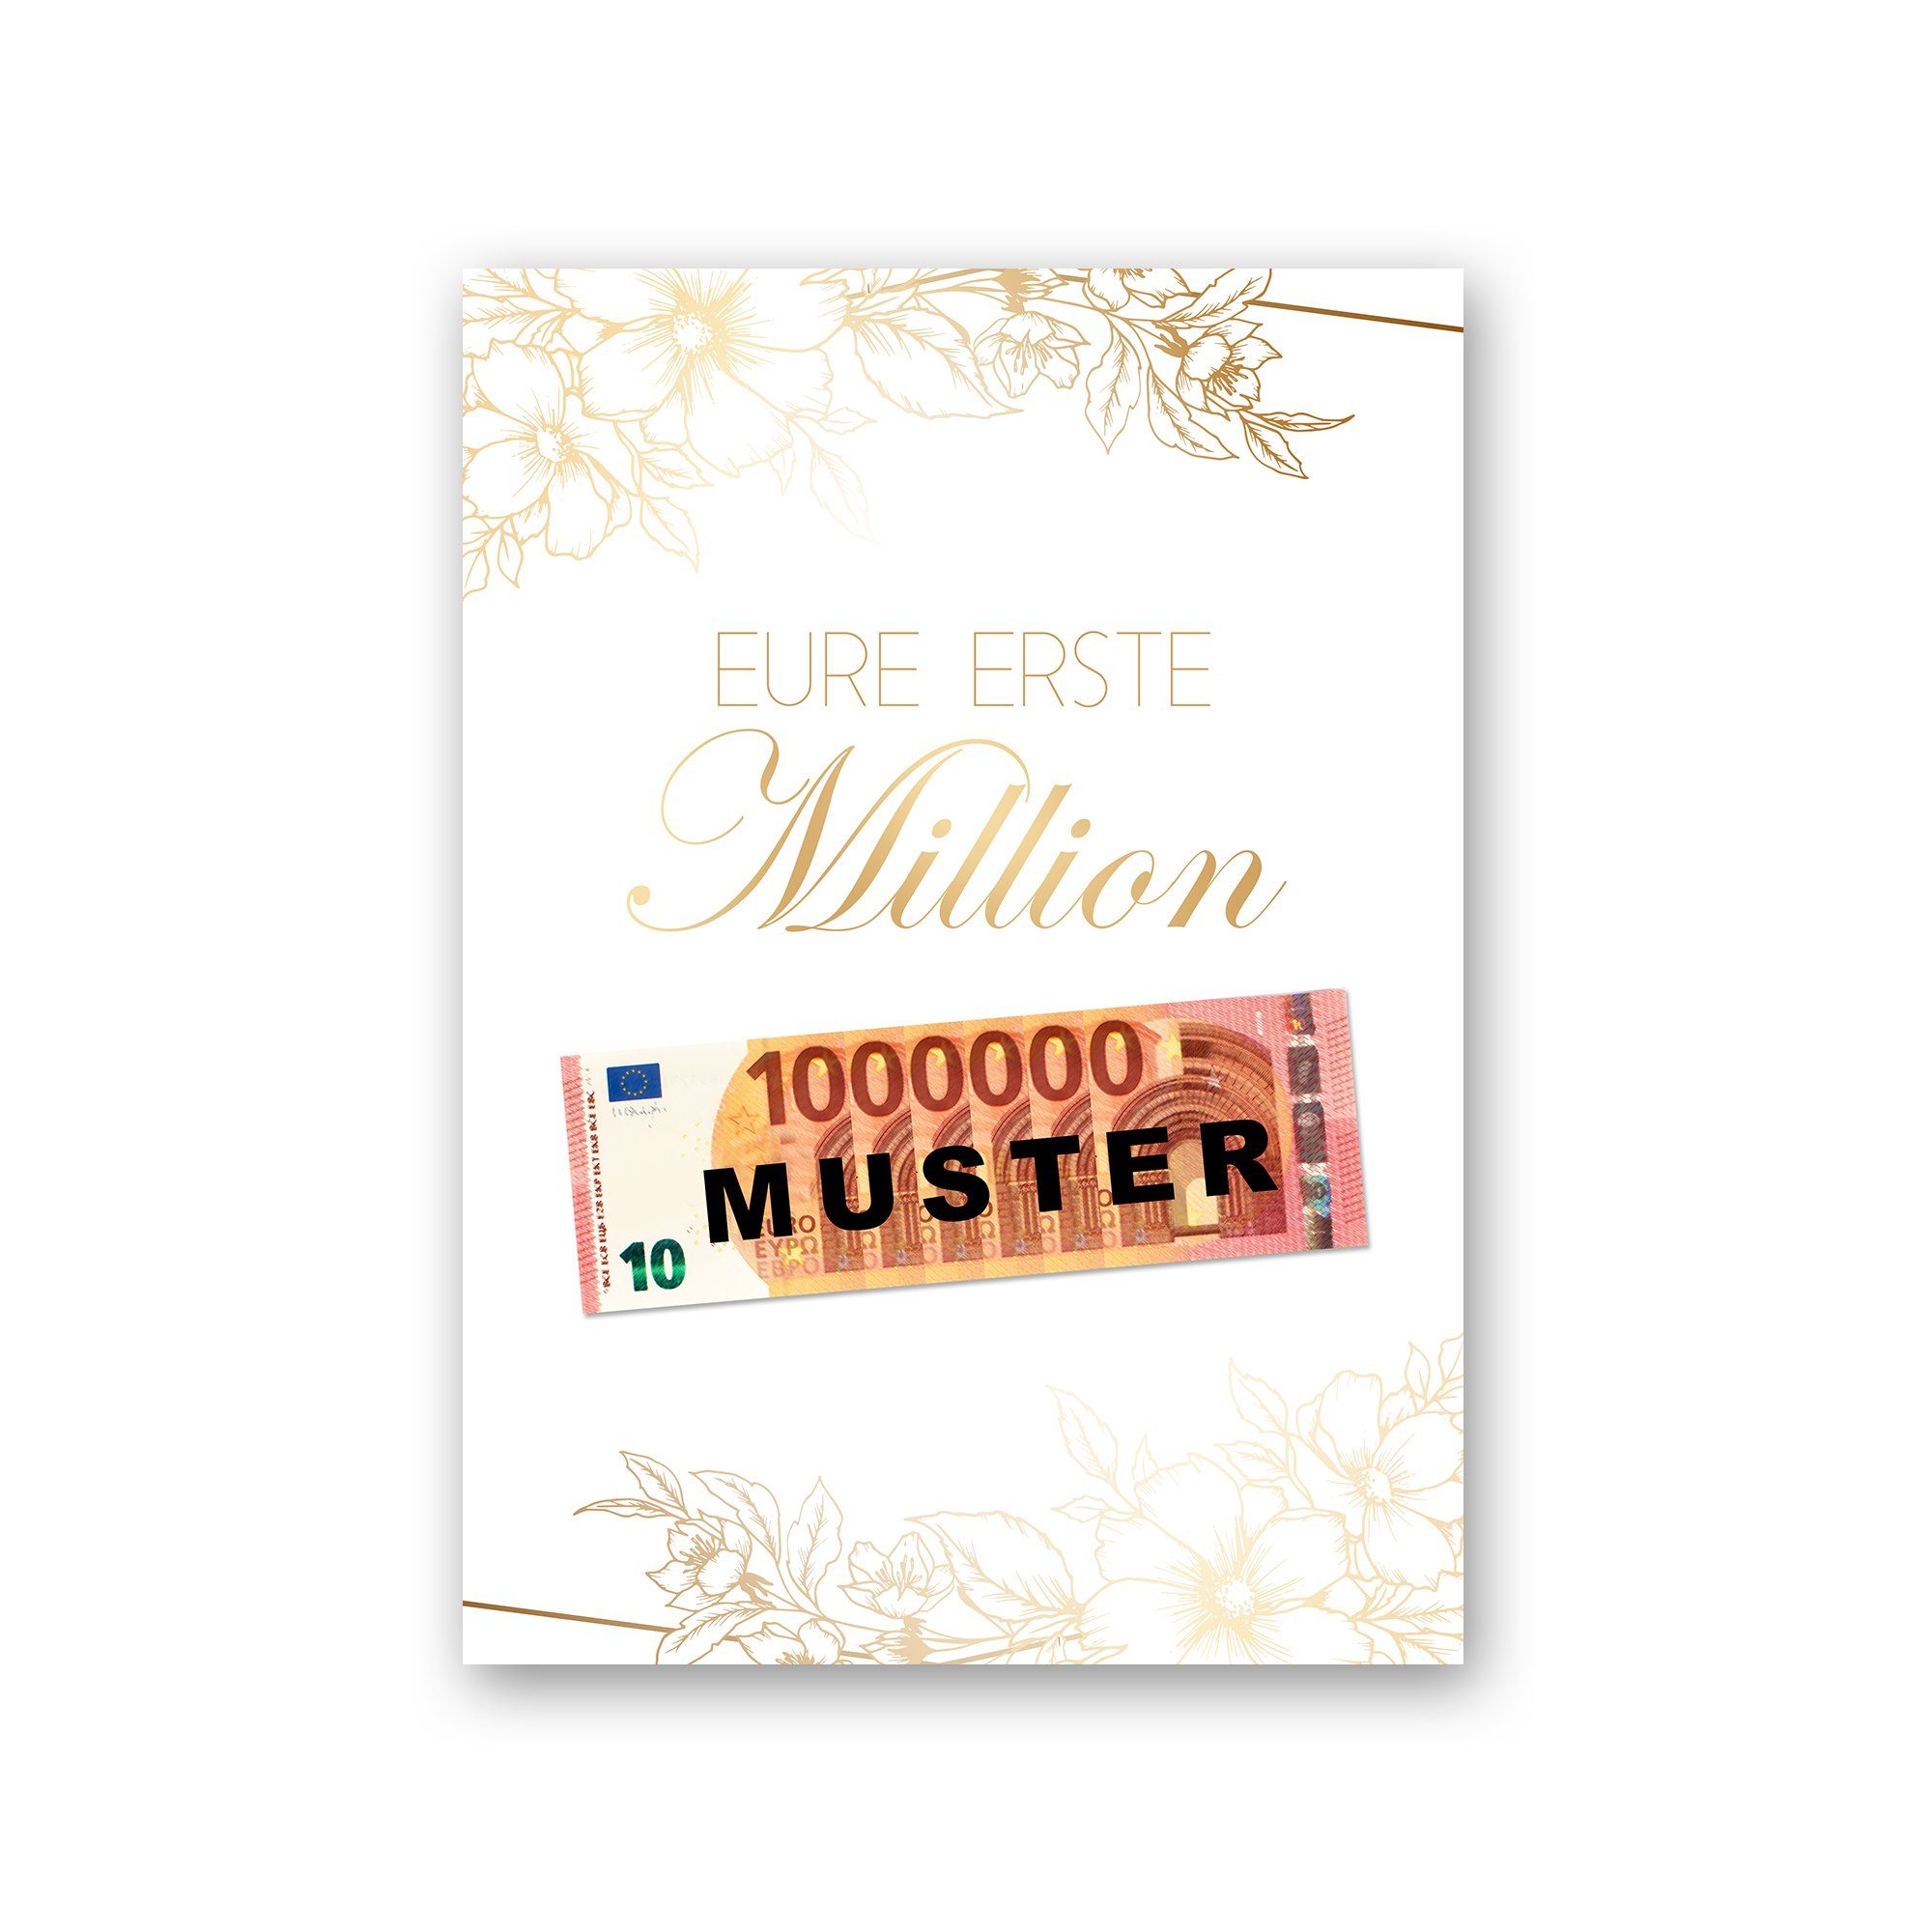 Kreative Feder Poster Premium Poster „Eure erste Million“ - Kunstdruck mit Blumen-Design, optional mit Rahmen; wahlweise DIN A4 oder DIN A3 ohne Rahmen